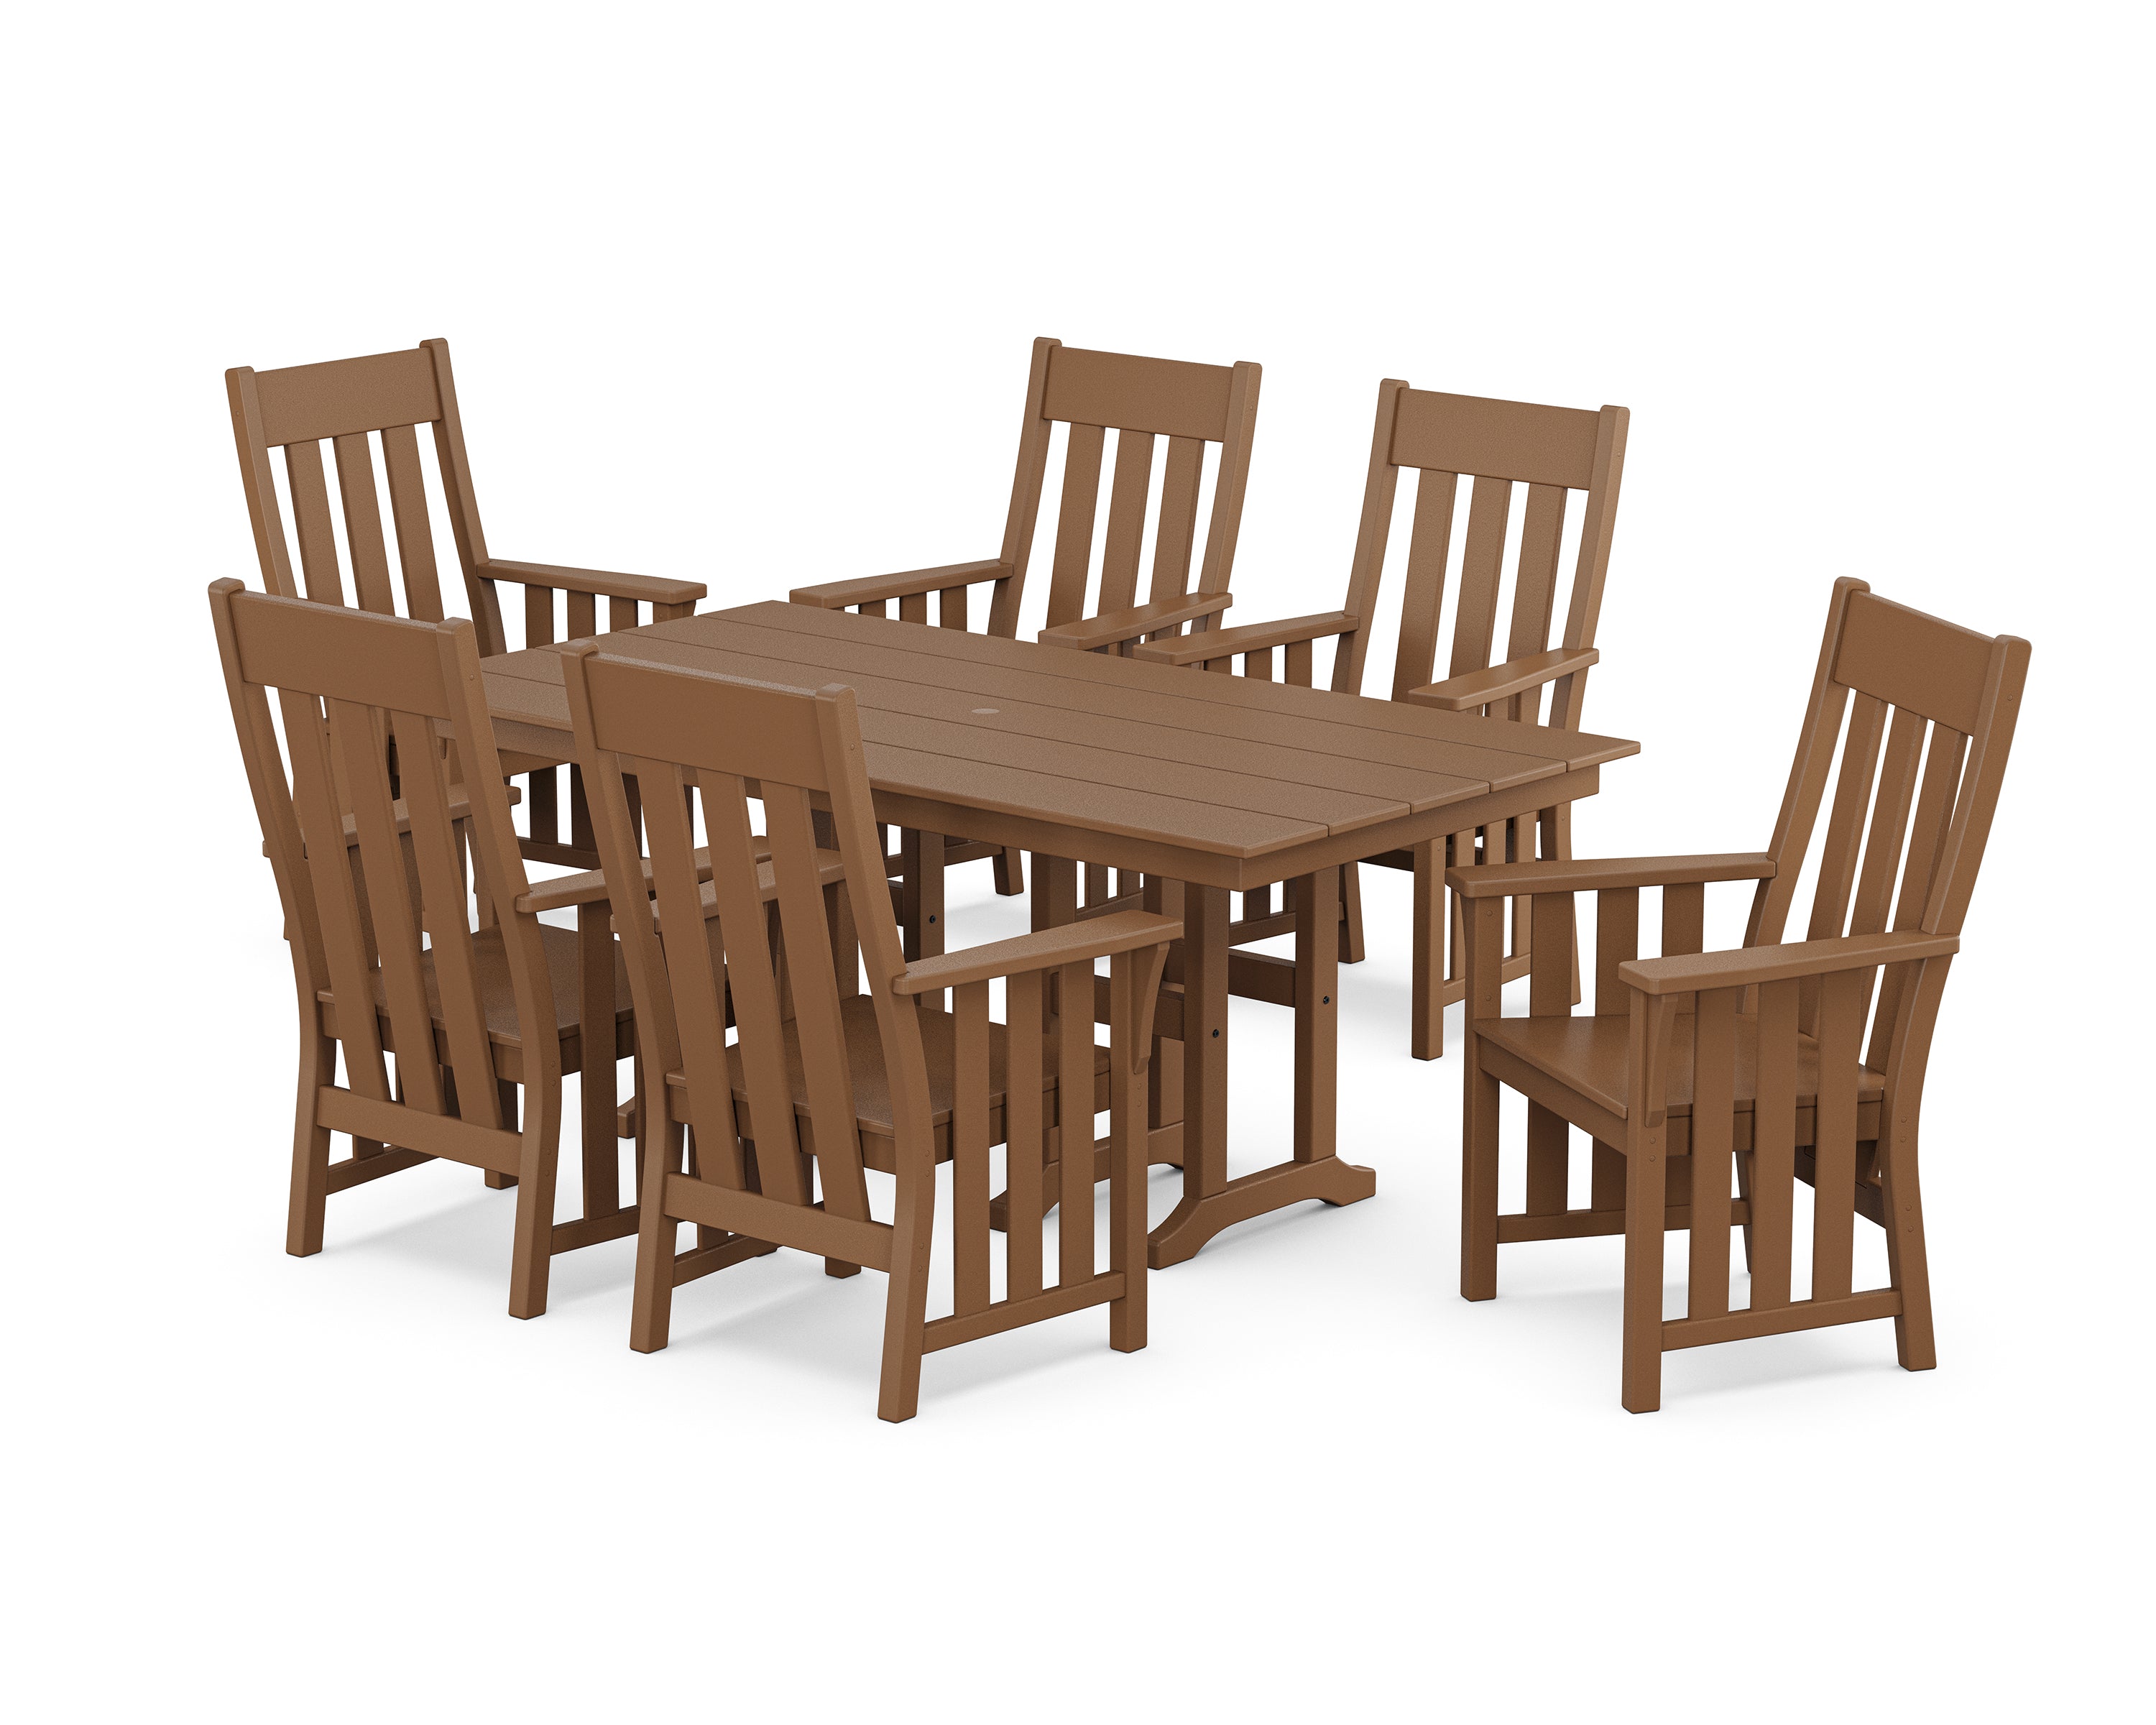 Martha Stewart by POLYWOOD® Acadia Arm Chair 7-Piece Farmhouse Dining Set in Teak